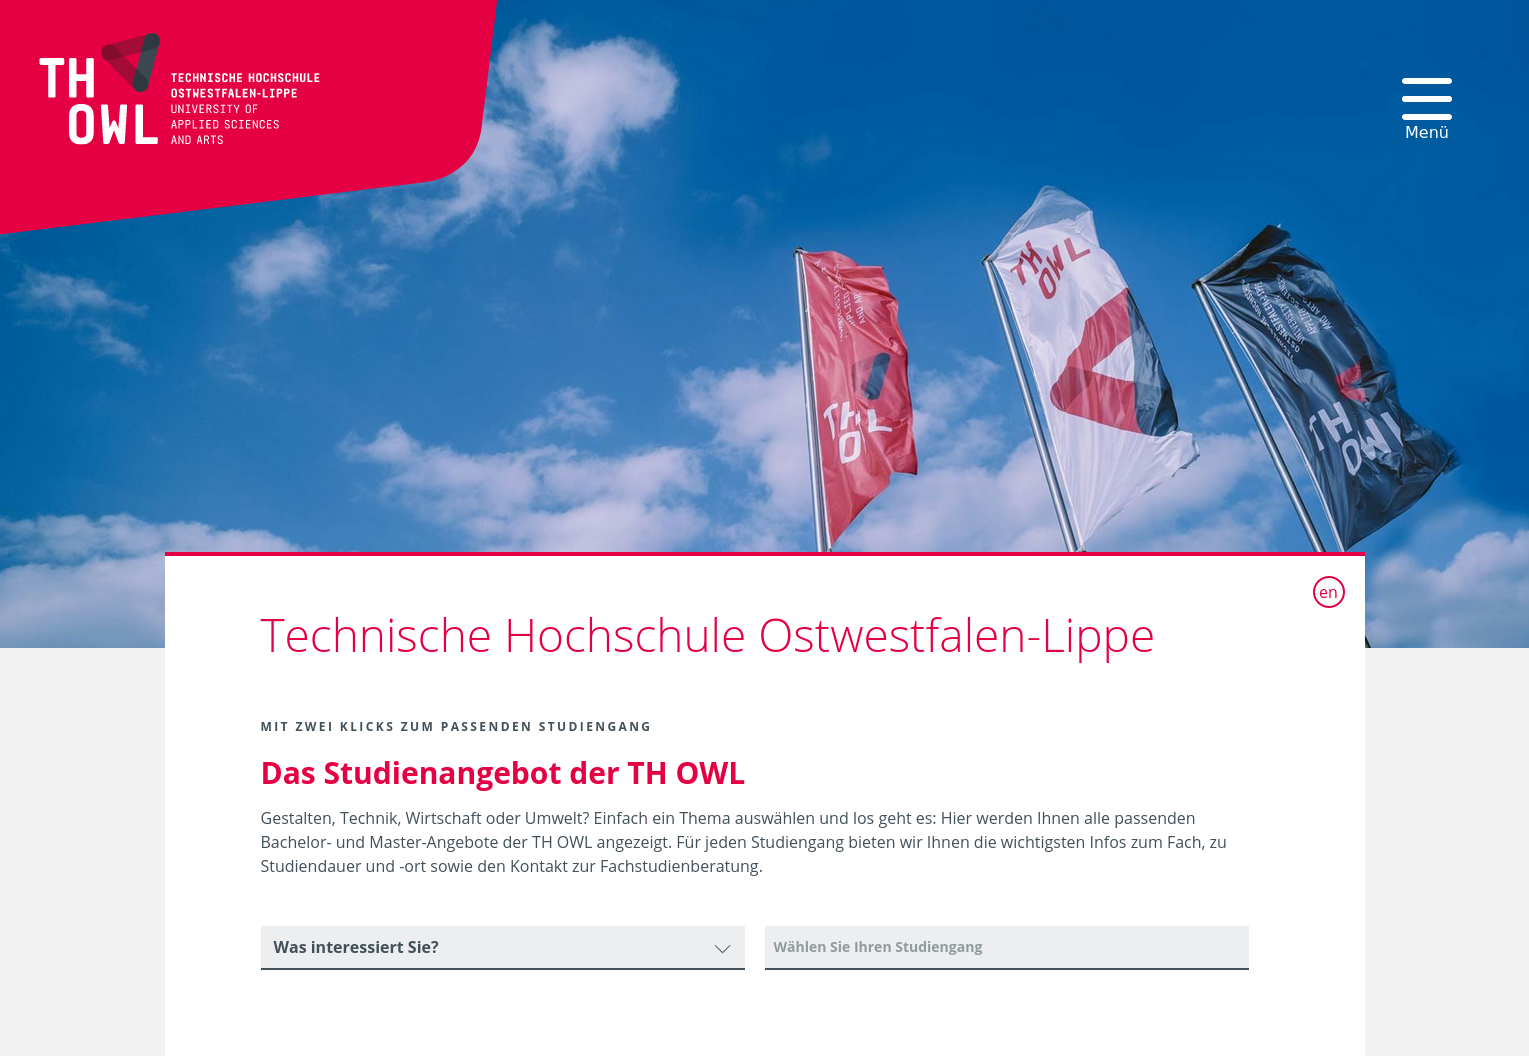 TYPO3 Studiengangsfinder auf der Startseite von hs-owl.de